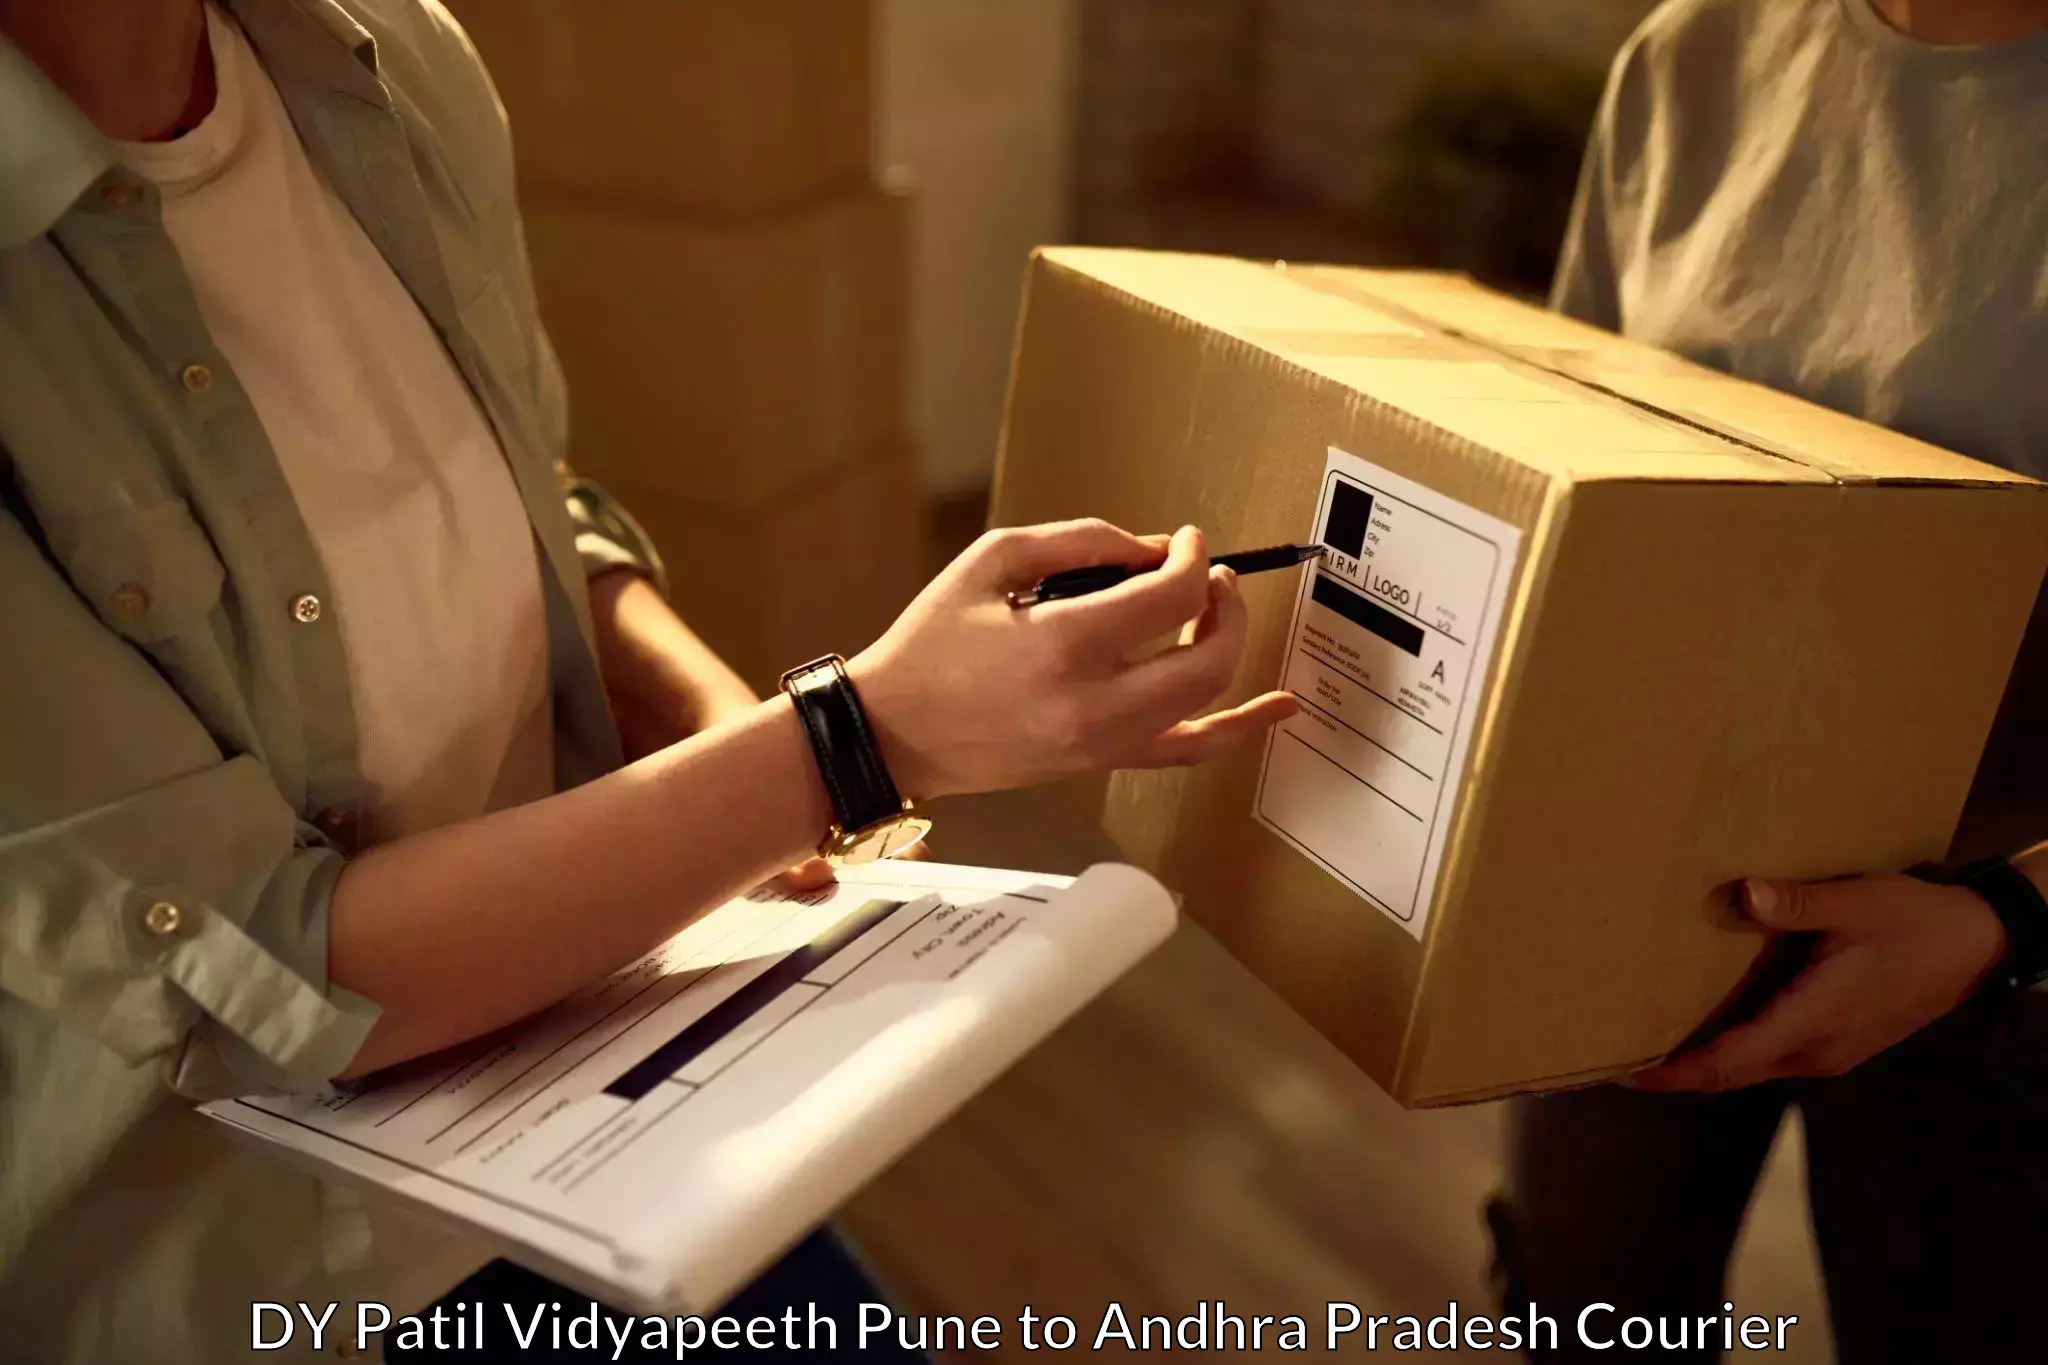 Premium courier services DY Patil Vidyapeeth Pune to Bapatla